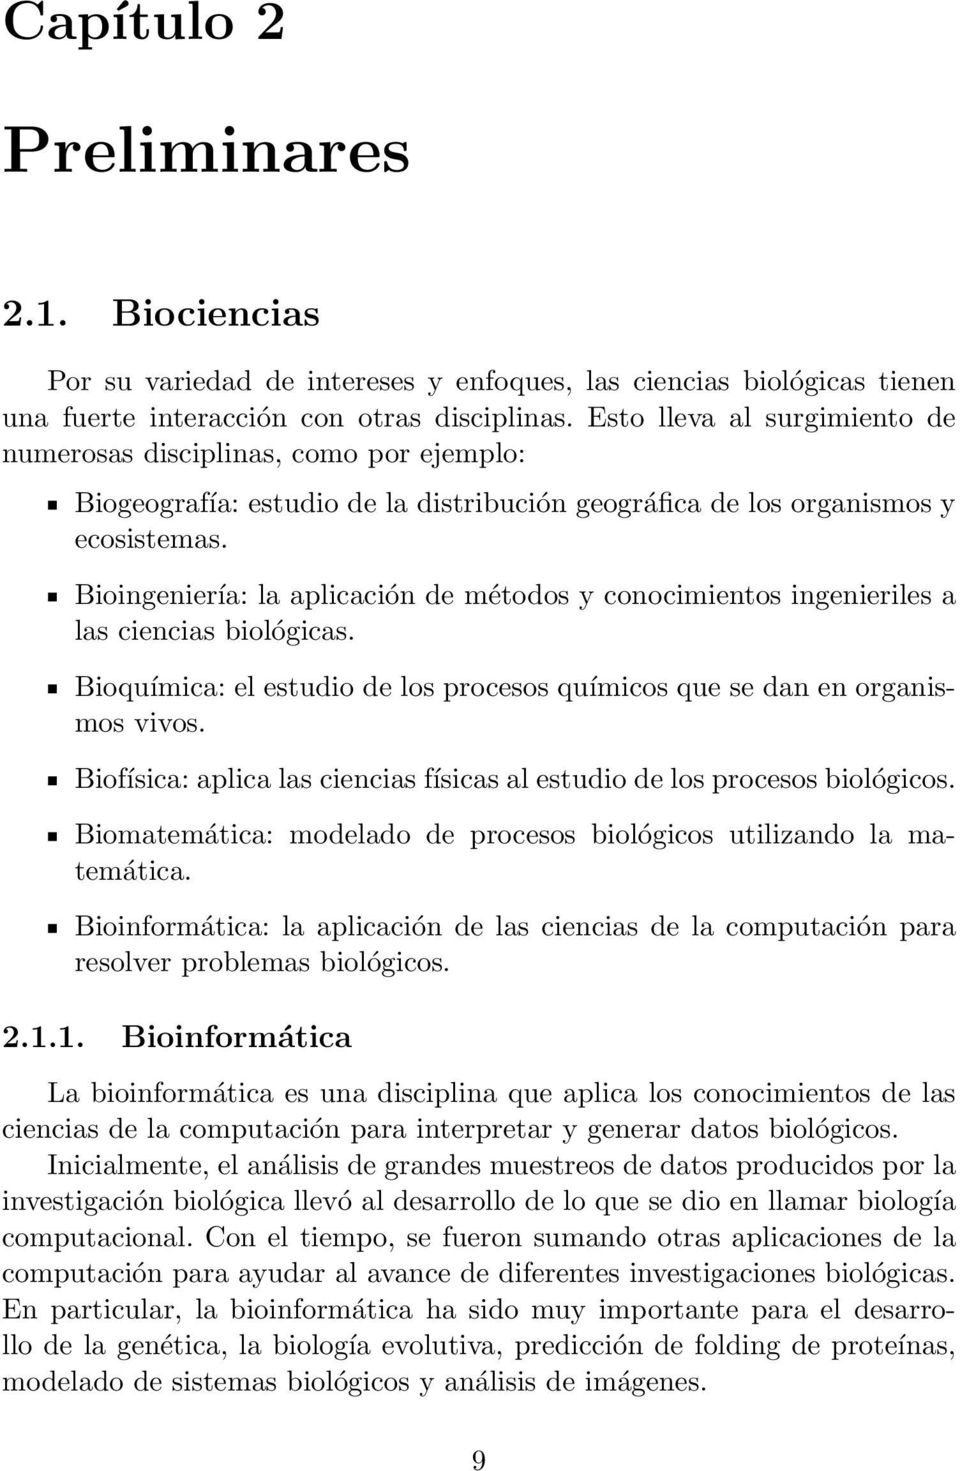 Bioingeniería: la aplicación de métodos y conocimientos ingenieriles a las ciencias biológicas. Bioquímica: el estudio de los procesos químicos que se dan en organismos vivos.